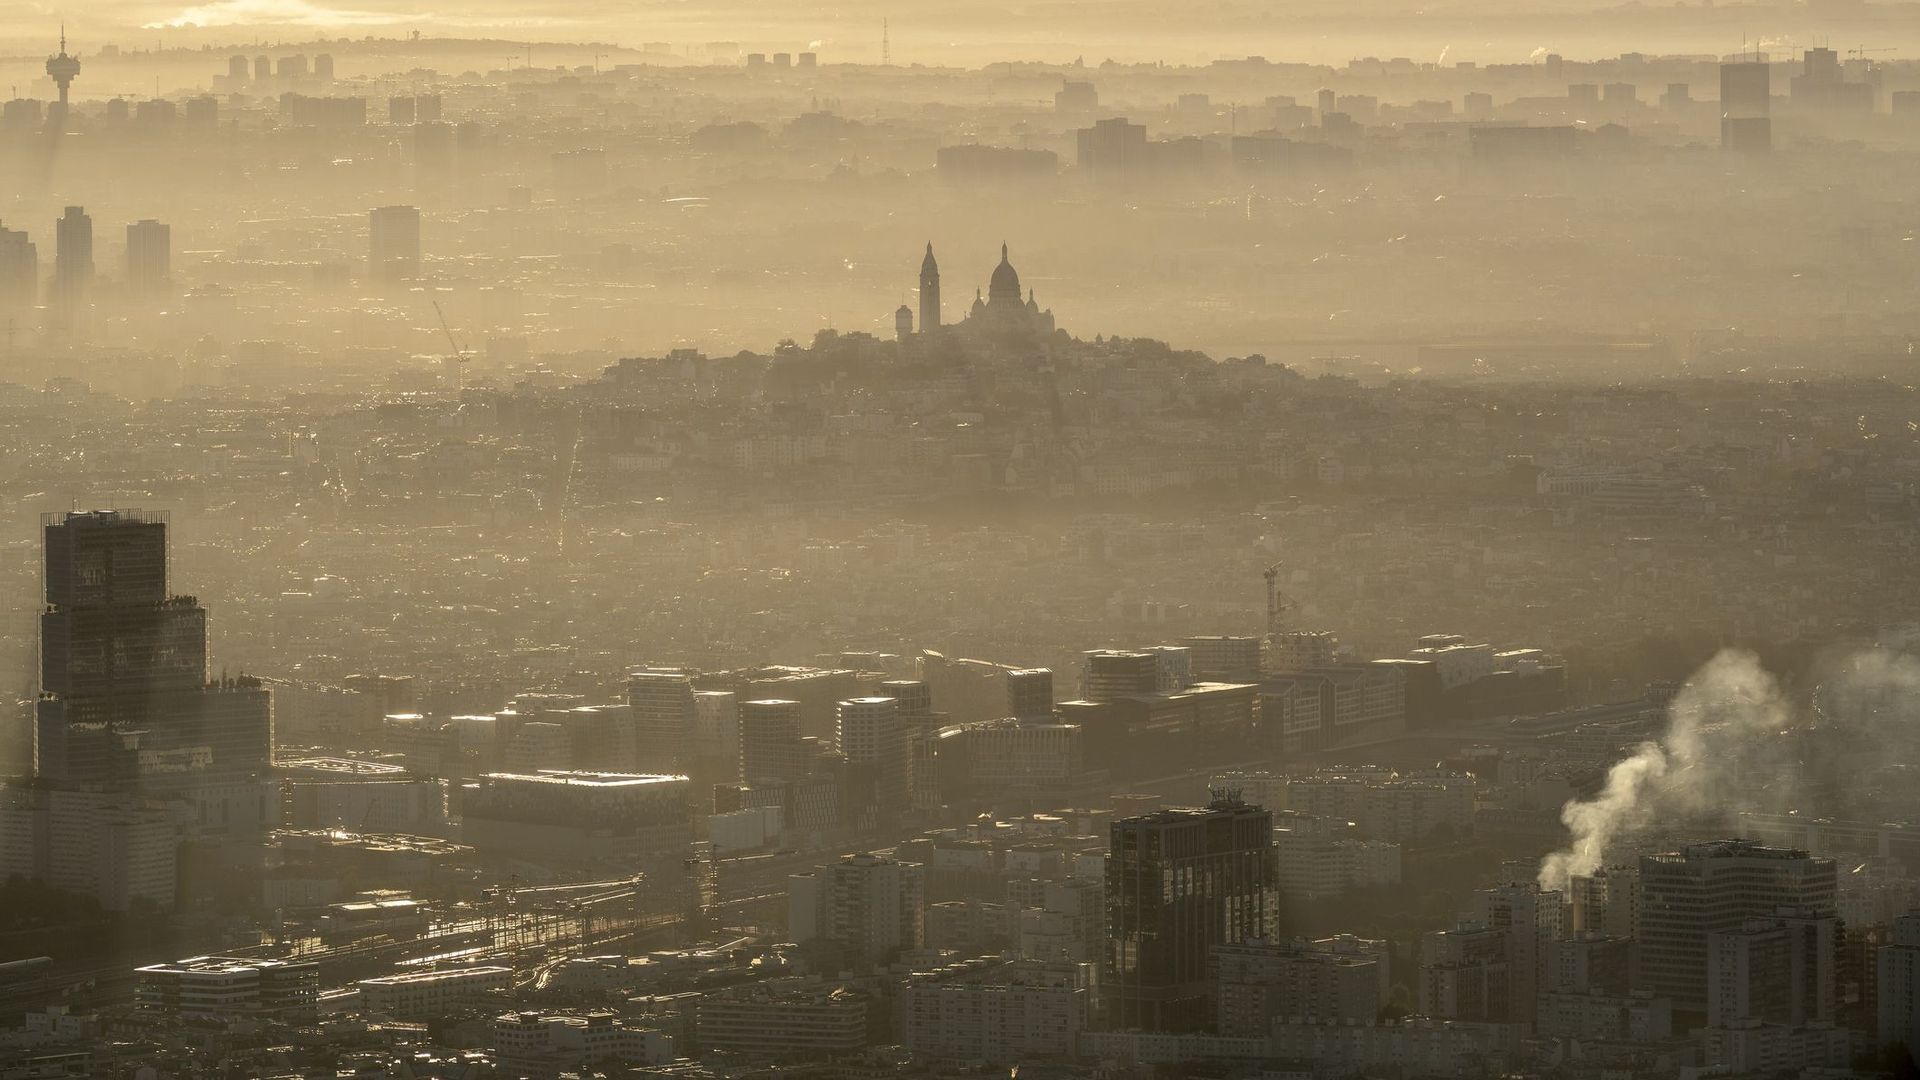 La pollution de l'air coûte 166 milliards d'euros par an en Europe (rapport).